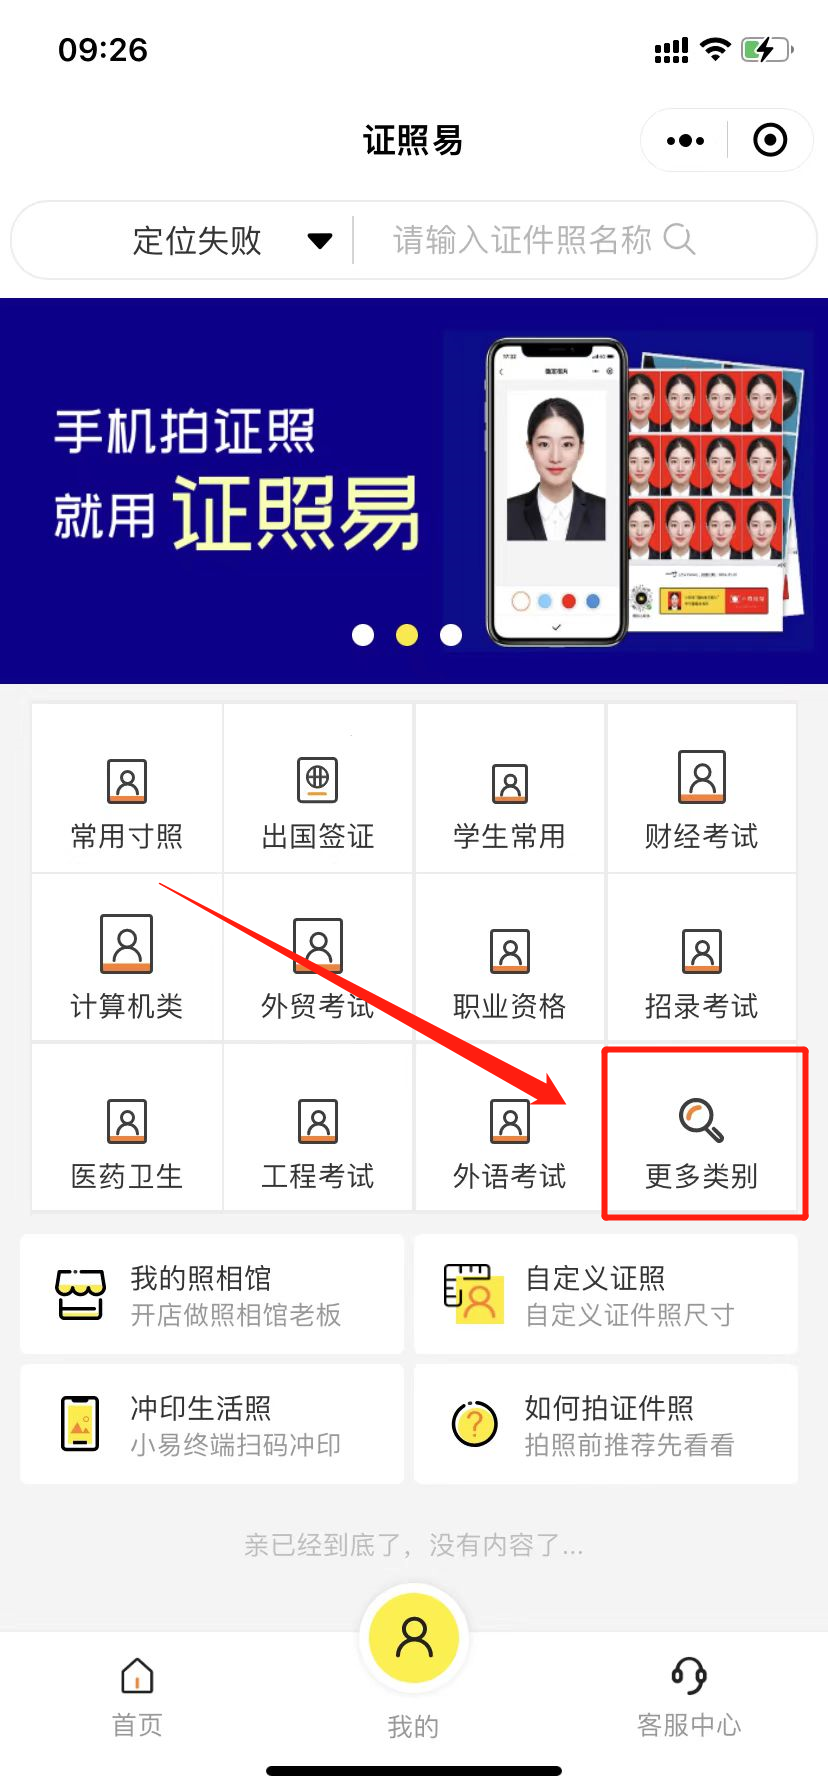 深圳金融社保卡照片回执可以网上办理吗